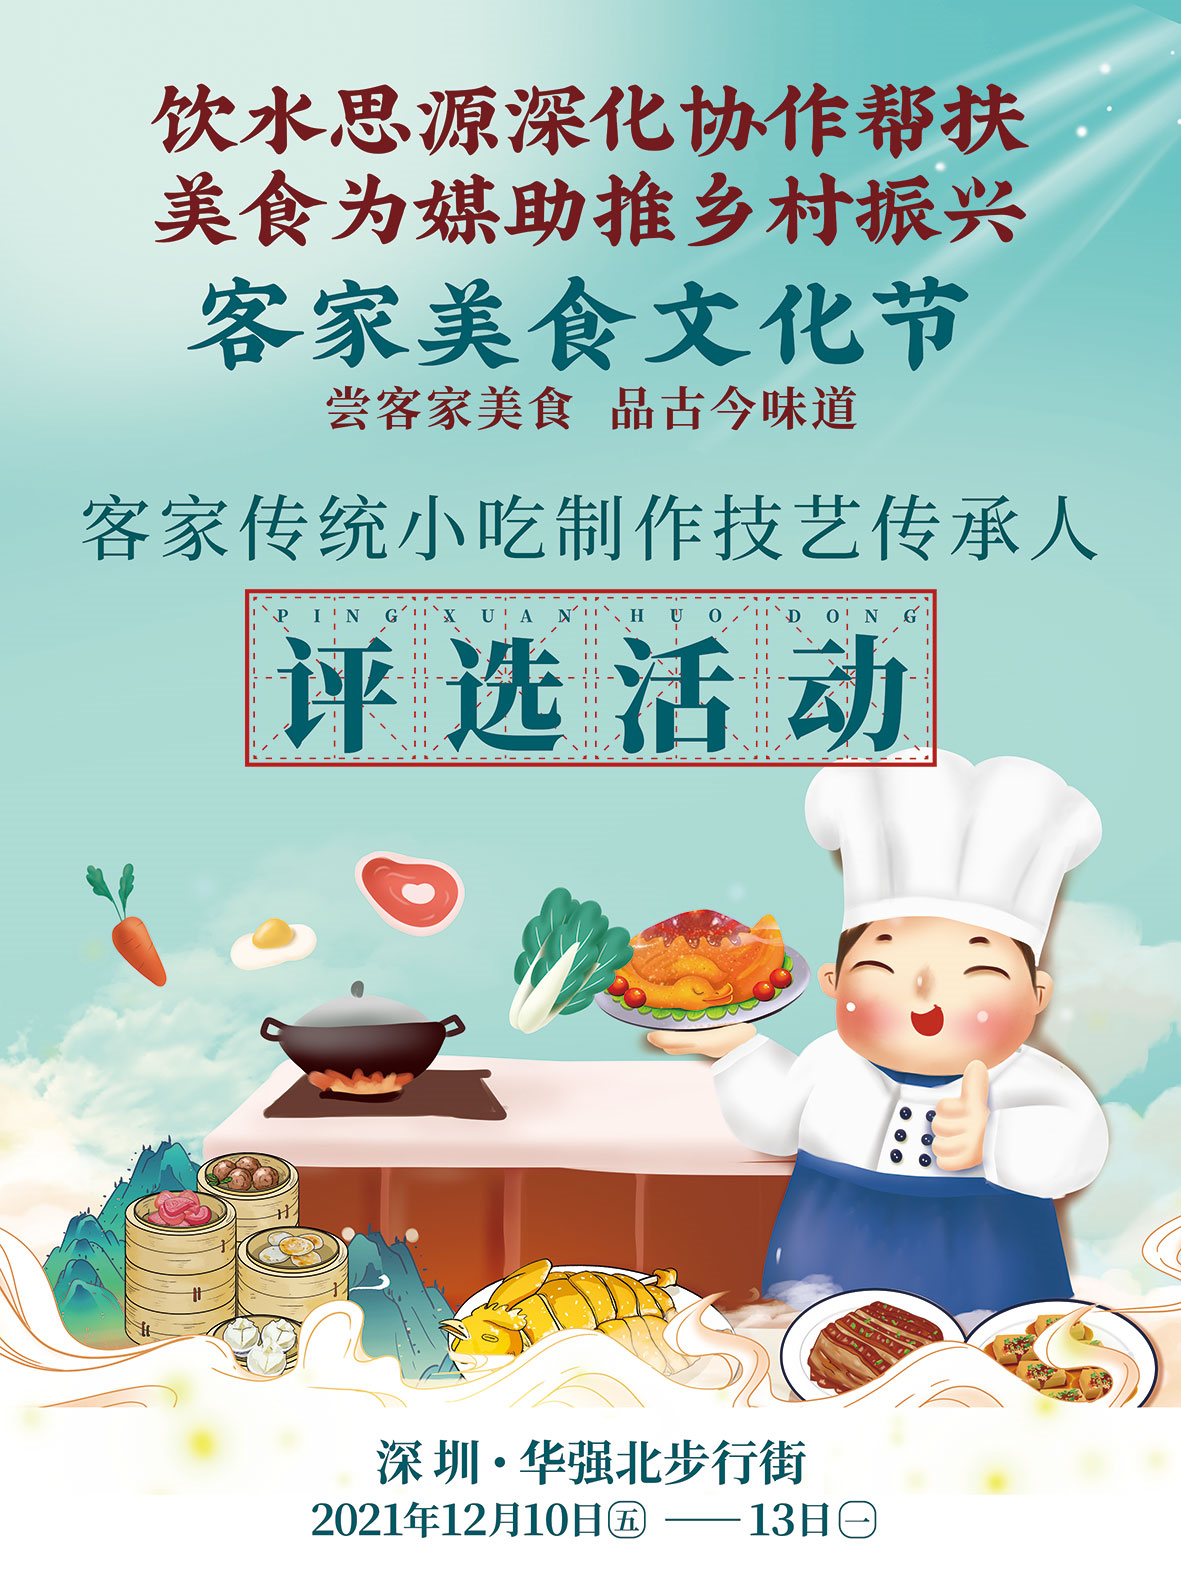 深河共建 圳在帮扶 | 美食为媒助推乡村振兴 客家美食文化节将在华强北举行